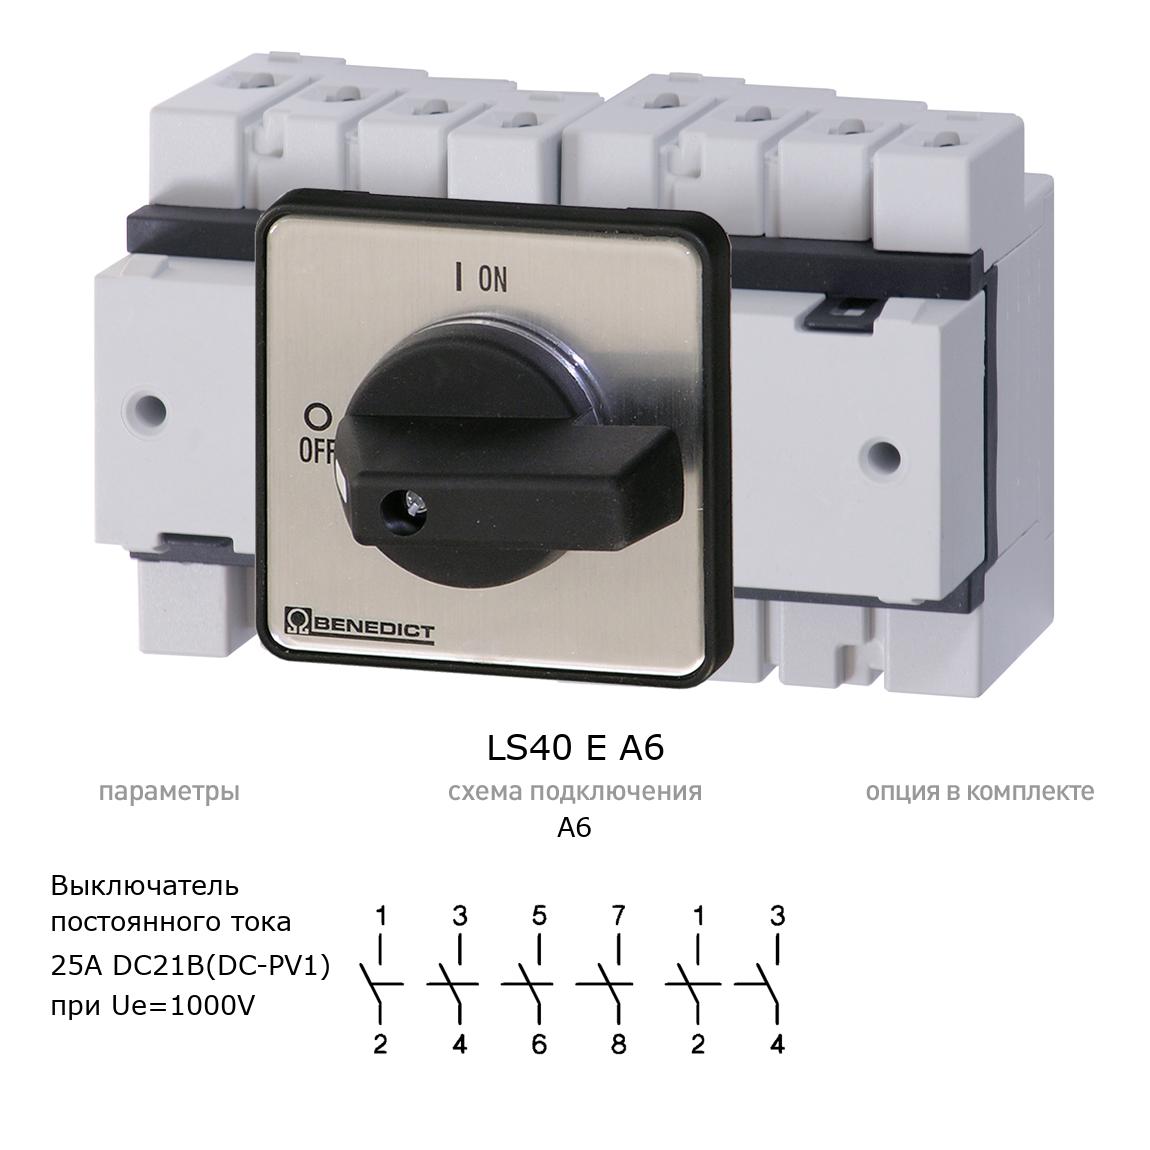 Кулачковый переключатель для постоянного тока (DC) LS40 E A6 BENEDICT